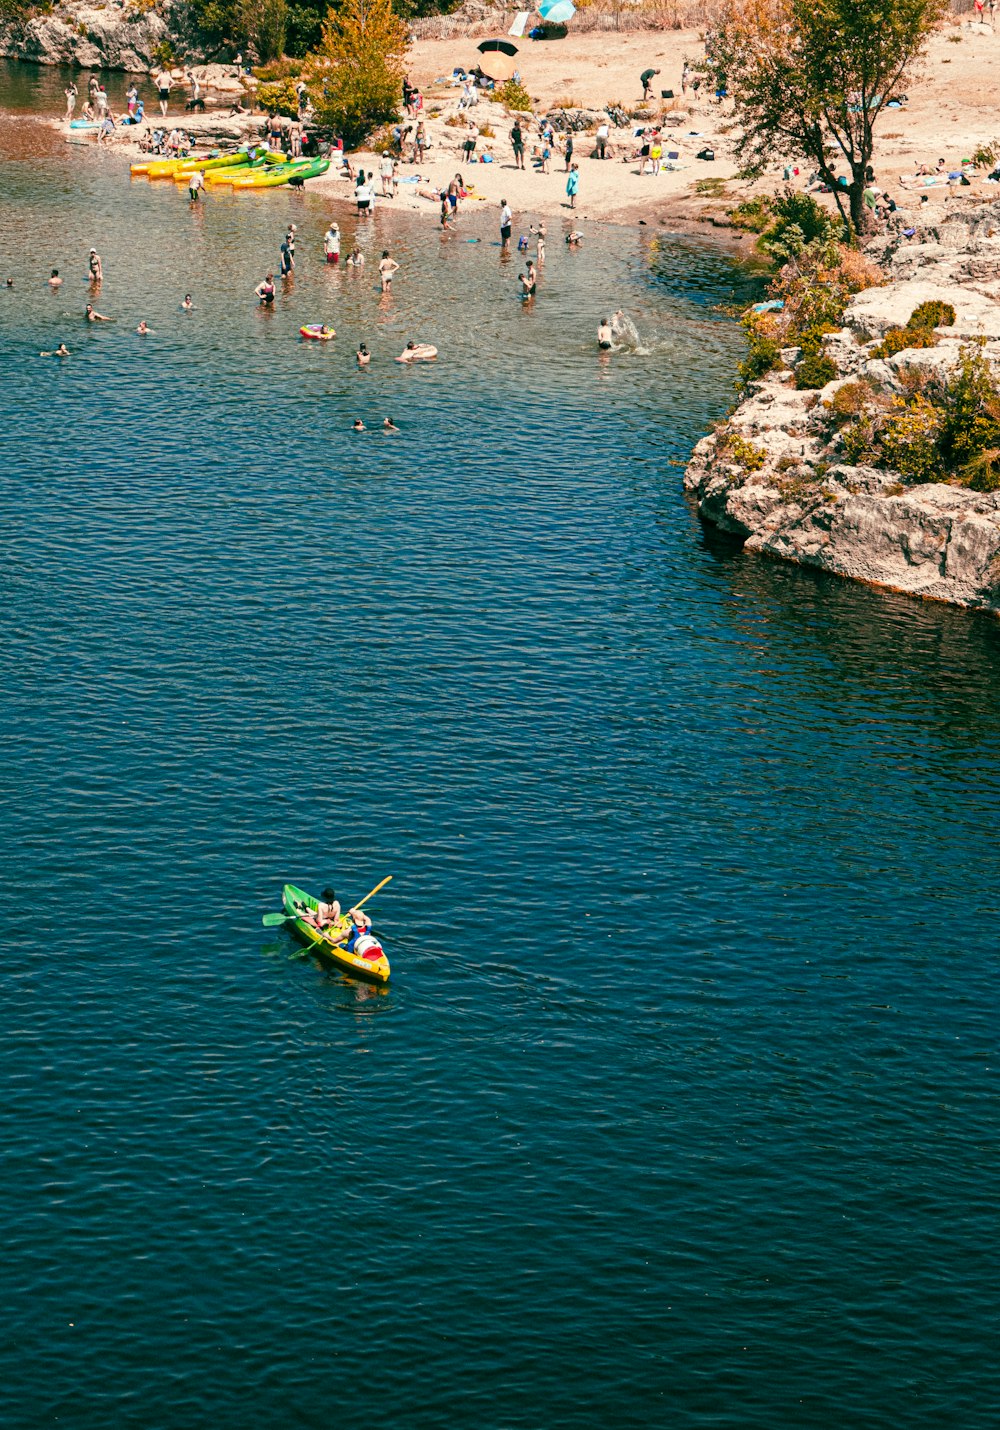 people riding on green kayak on blue sea during daytime